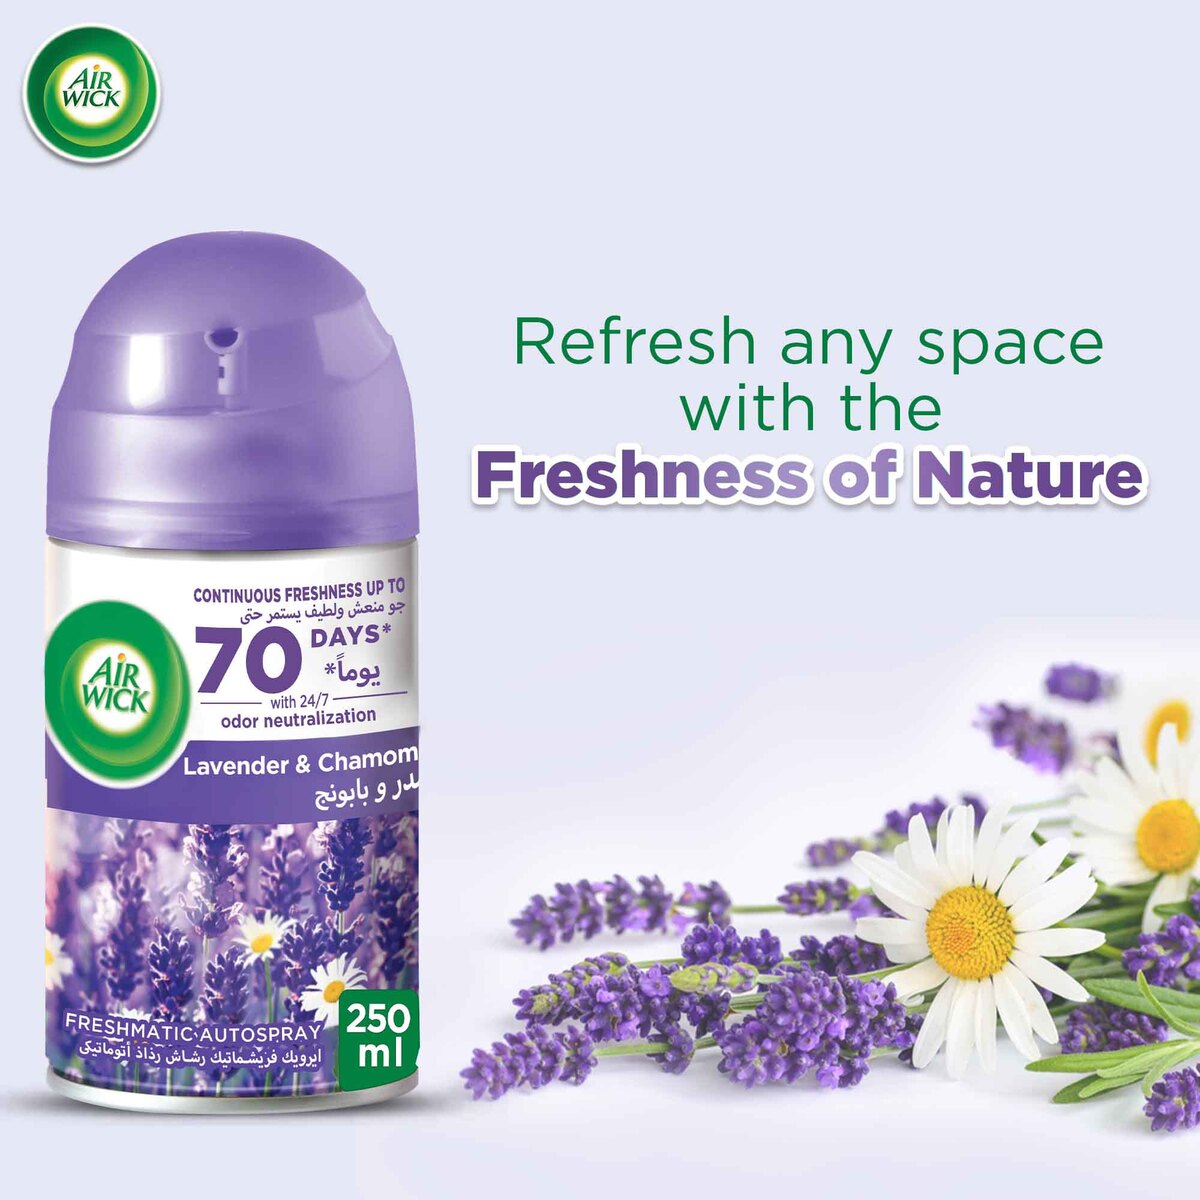 Airwick Freshmatic Automatic Spray Refill Lavender & Camomile 250 ml